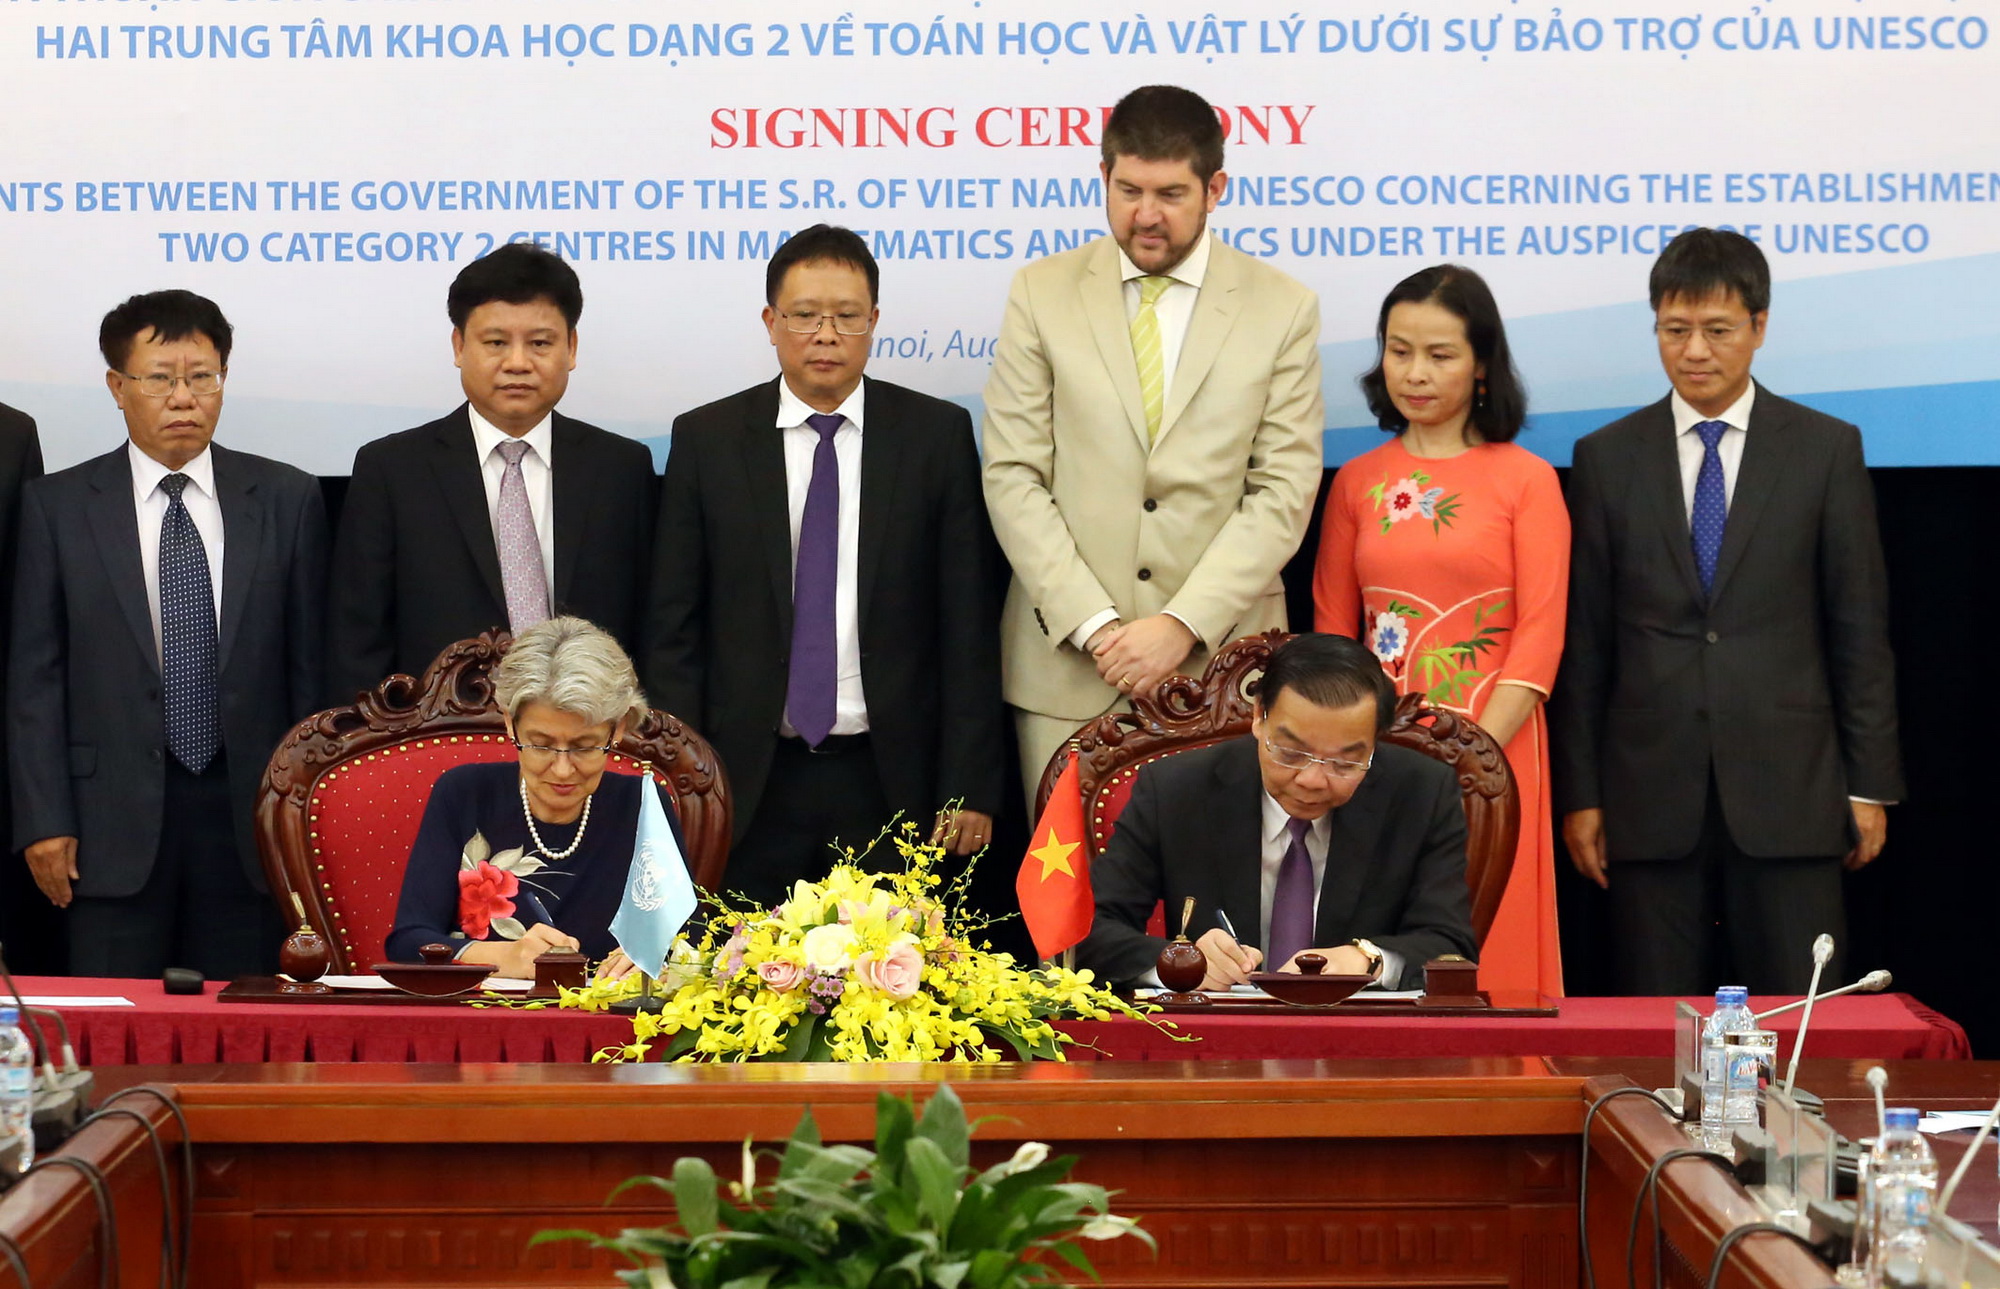 Lễ ký kết thỏa thuận giữa Việt Nam và UNESCO về việc thành lập tại Việt Nam hai Trung tâm khoa học dạng 2 về Toán học và Vật lý dưới sự bảo trợ của UNESCO ngày 24/8/2017. (Nguồn: TTXVN)